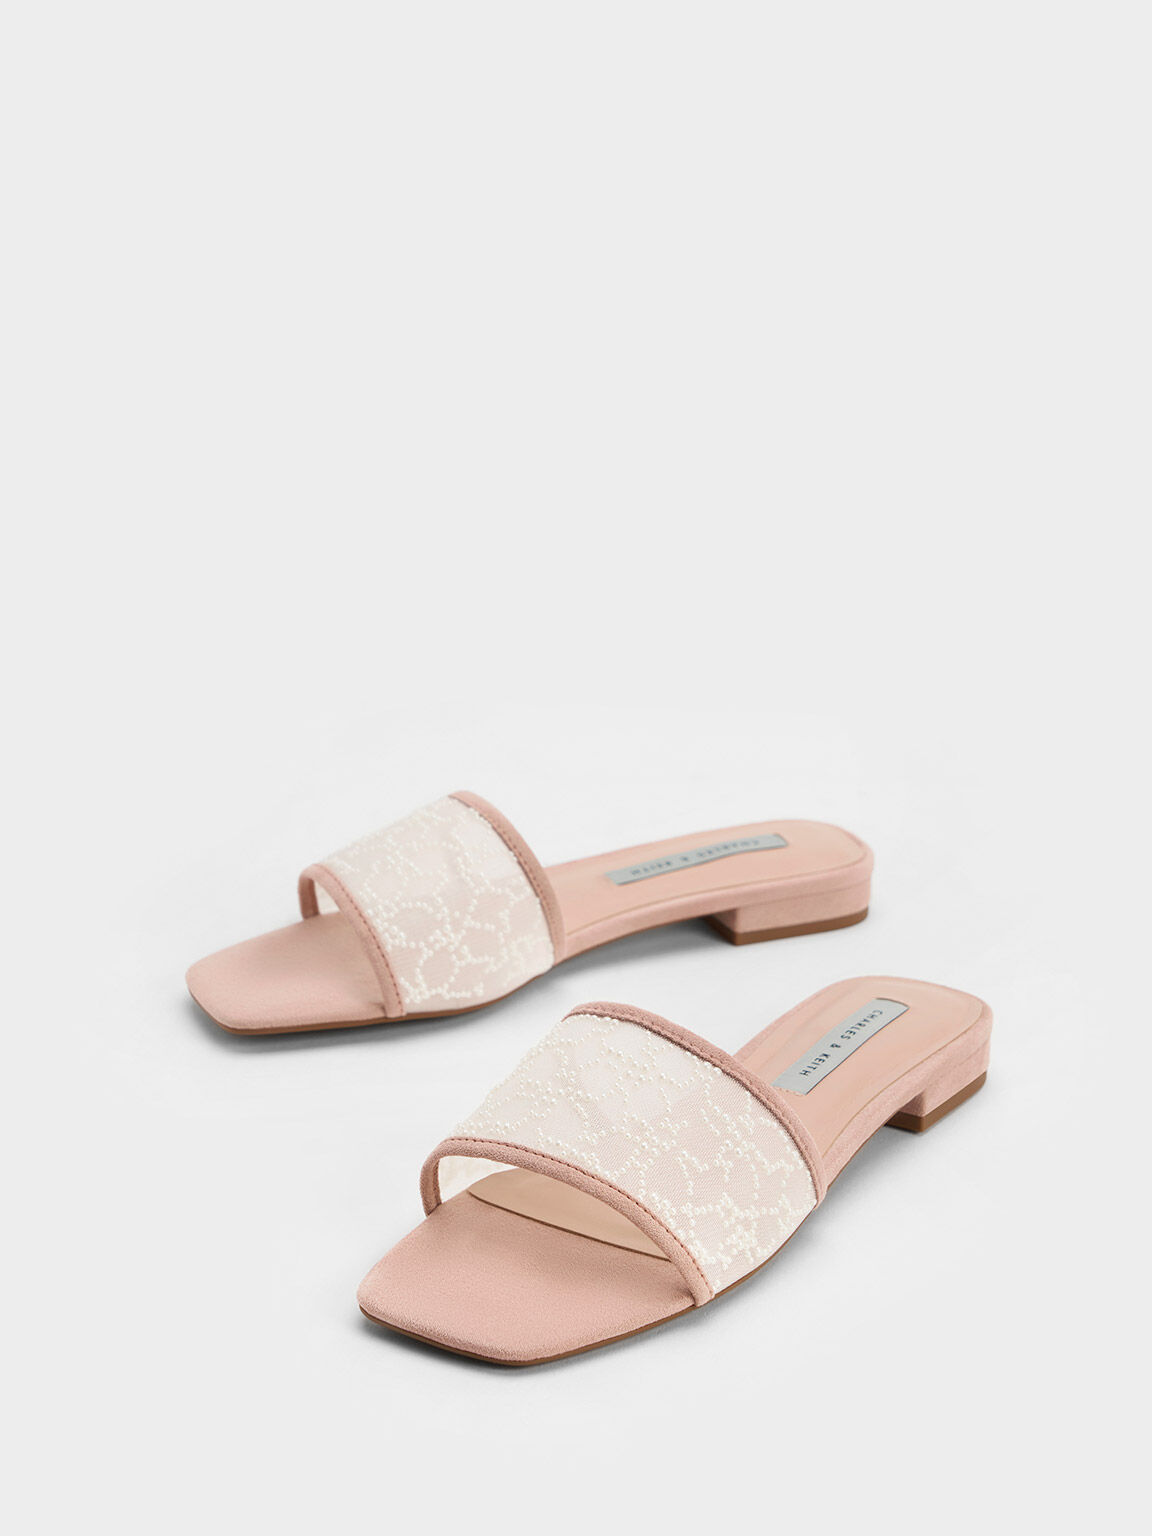 Sandal Flat Bead-Embellished Mesh, Nude, hi-res